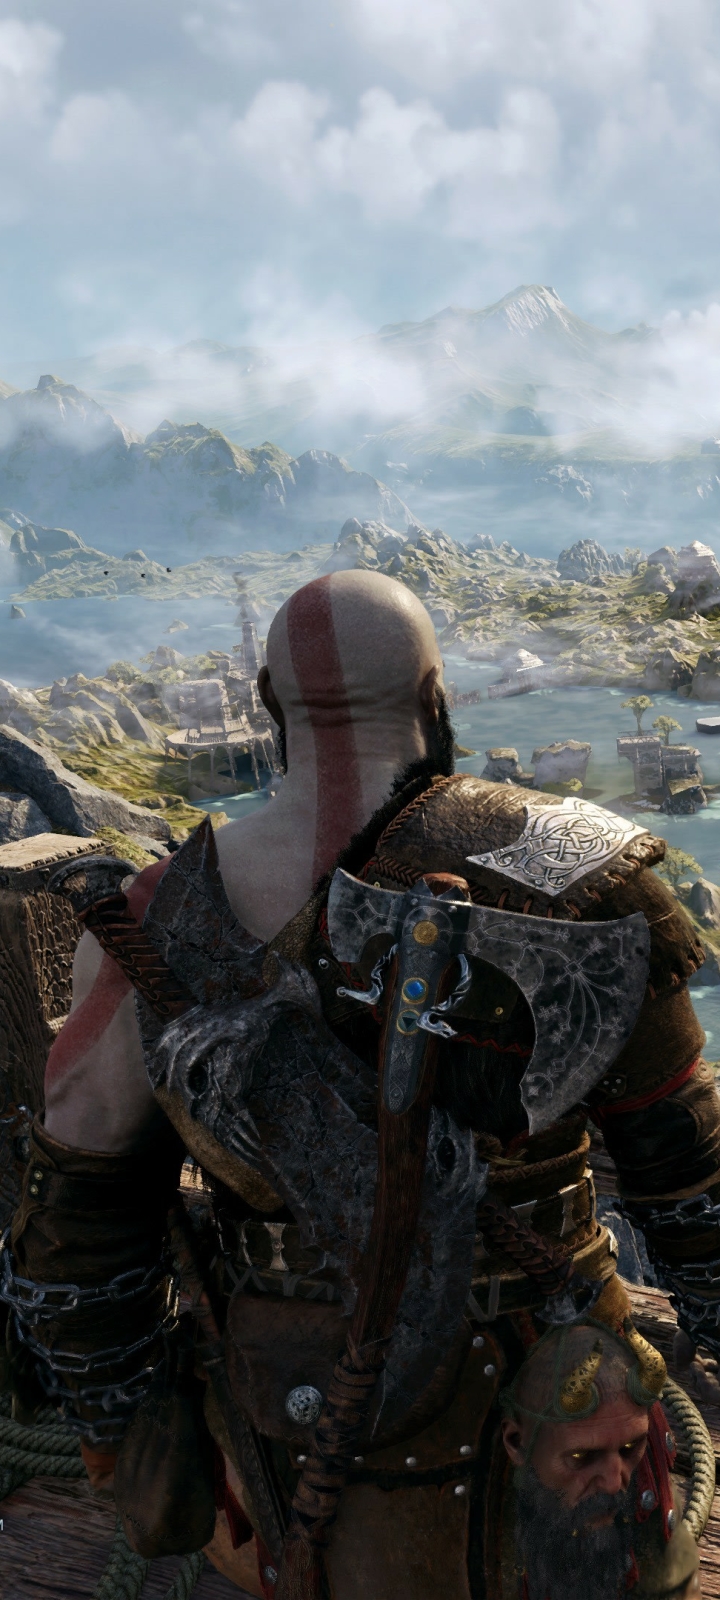 Mobile wallpaper: Video Game, Kratos (God Of War), God Of War: Ragnarök,  1422219 download the picture for free.